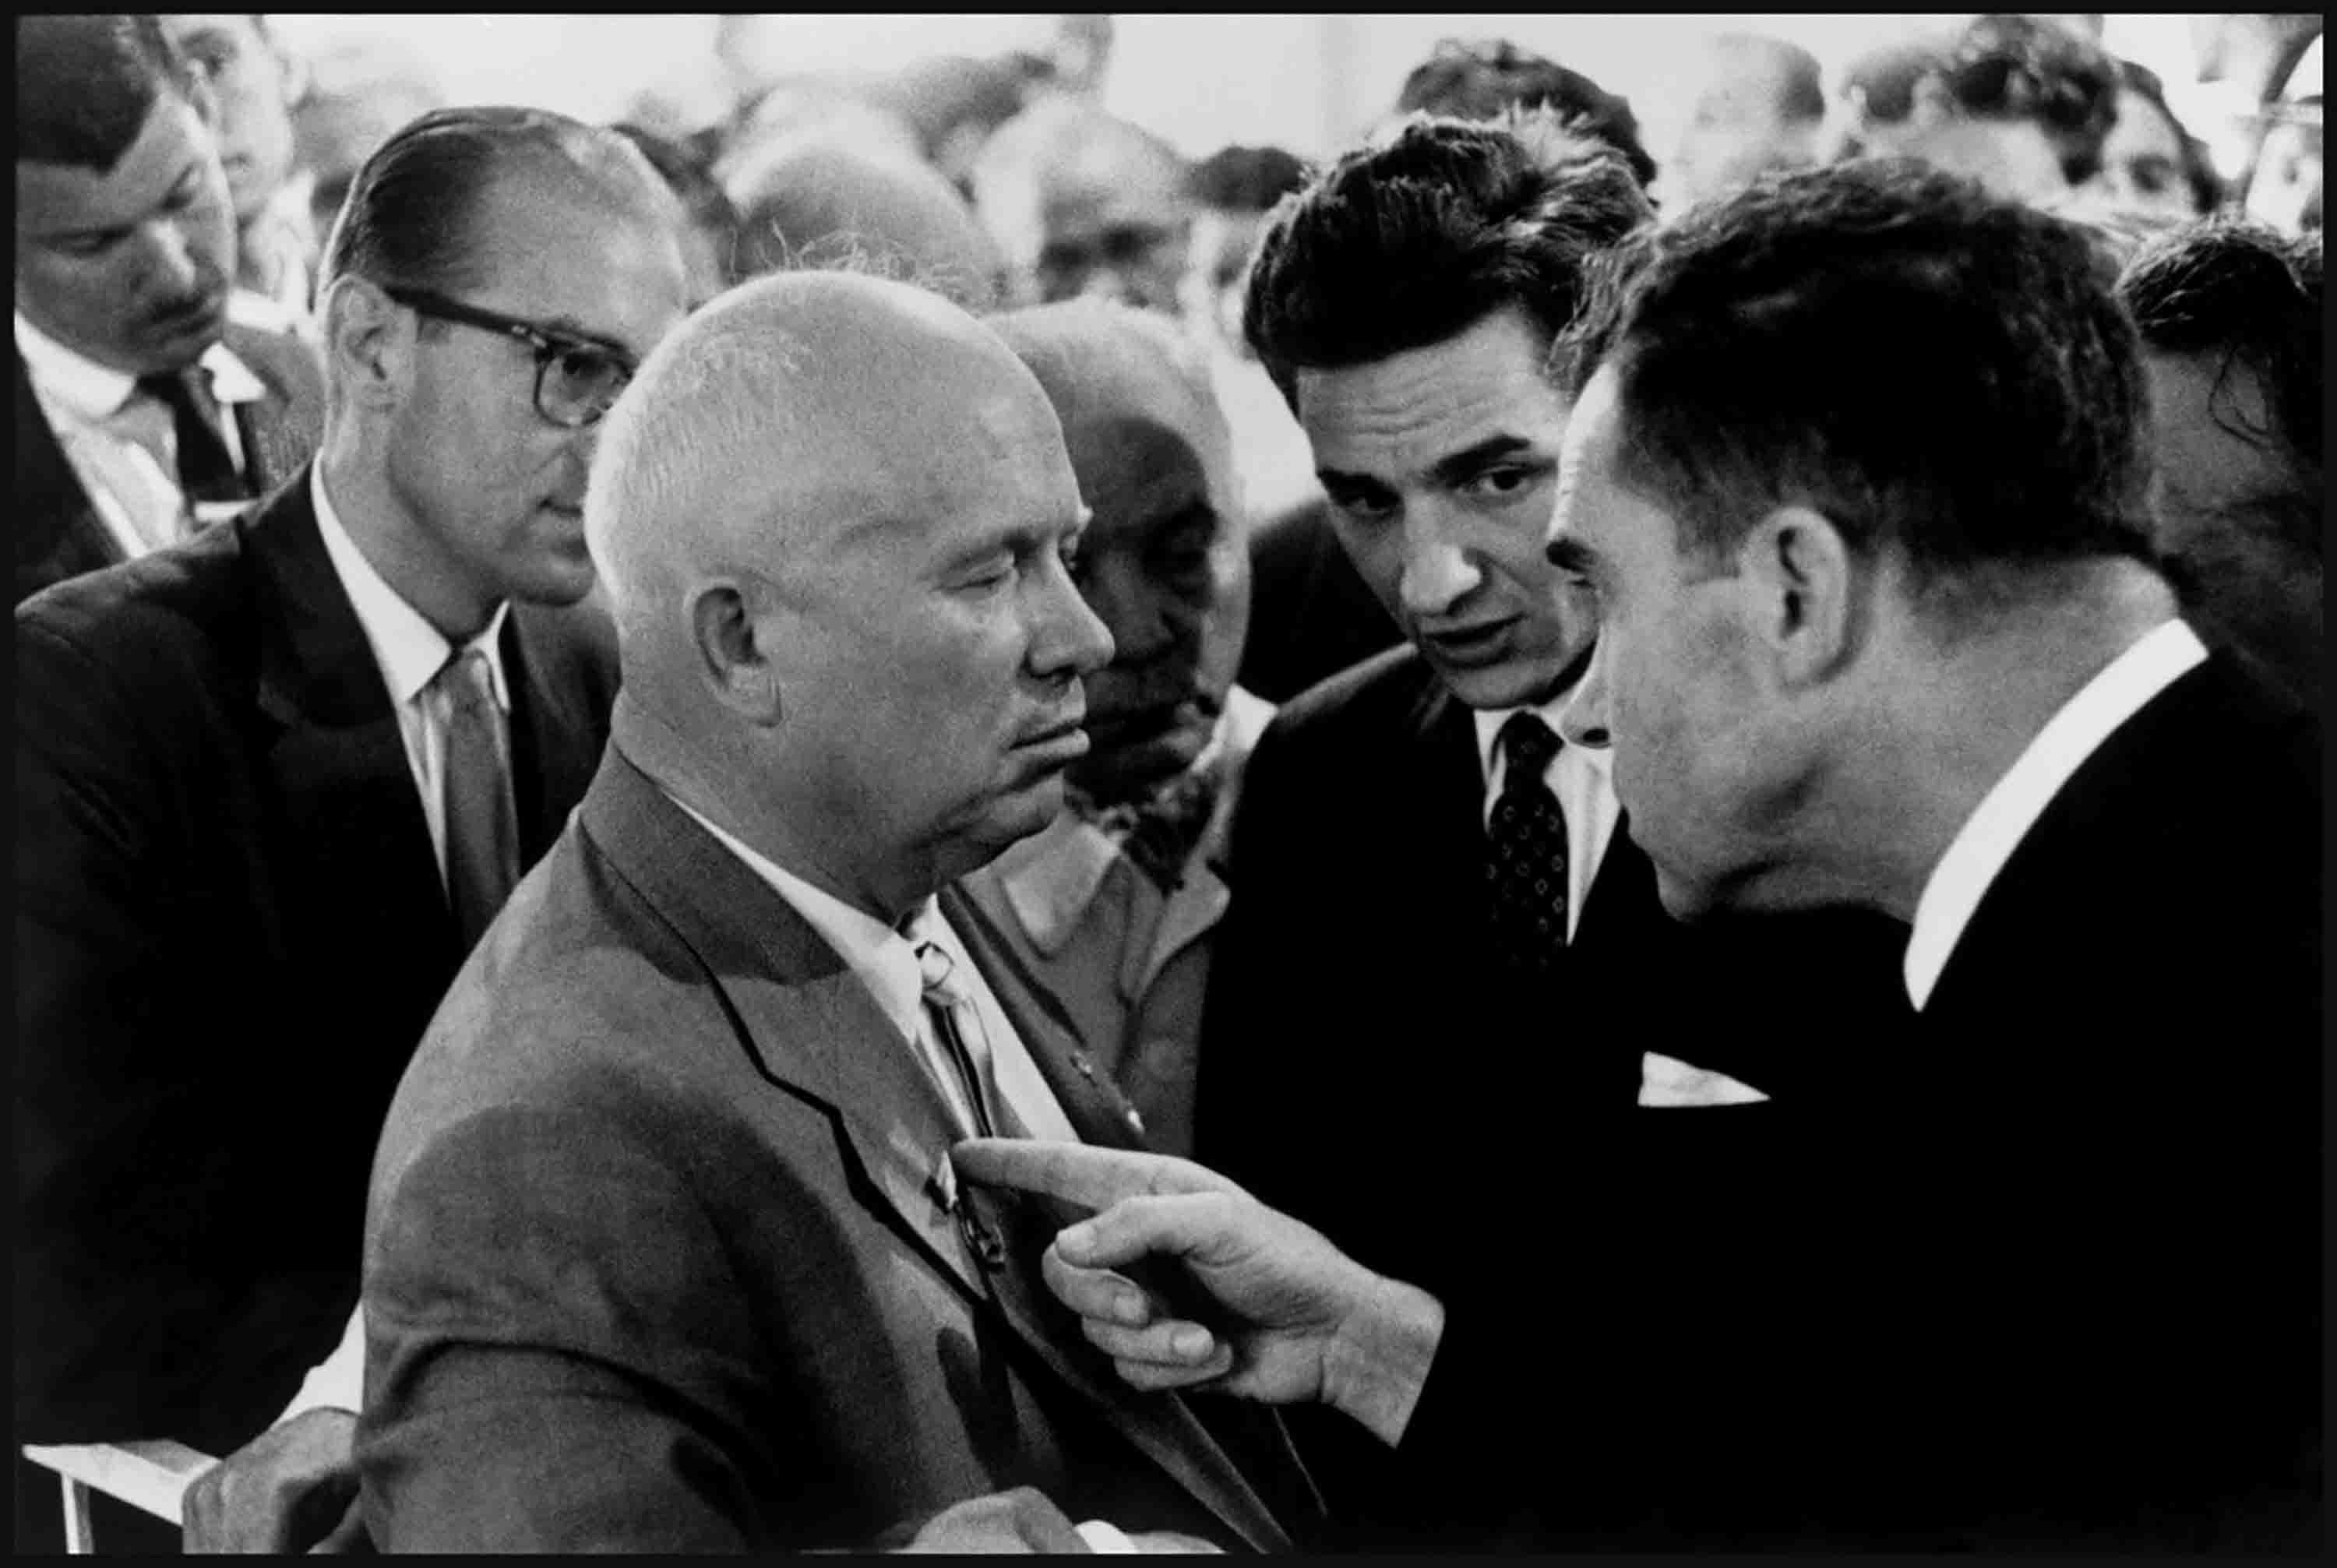 elliott erwitt nixon khrushchev